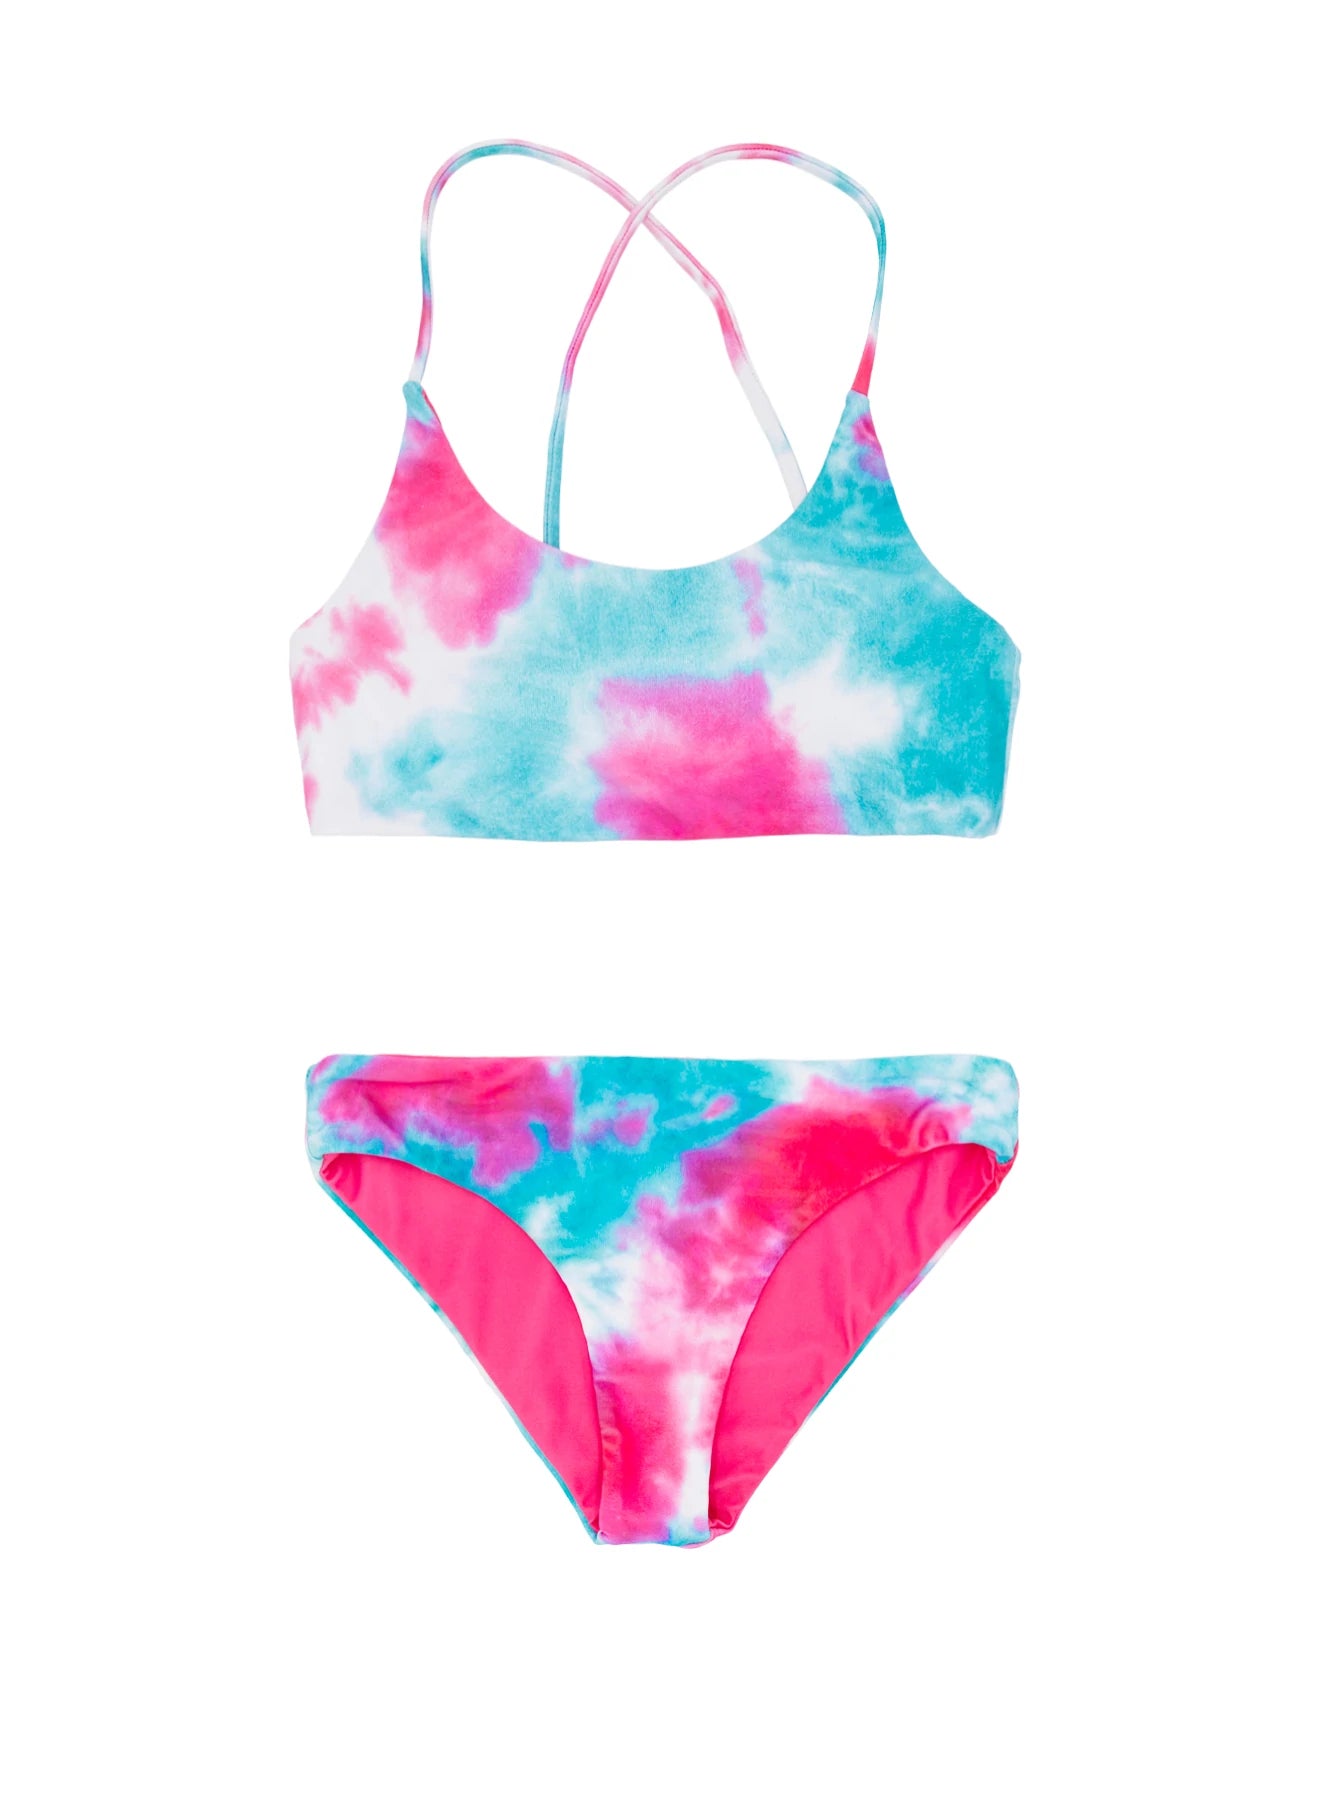 Beach Party Tie-Dye Reversible Waverly Bikini